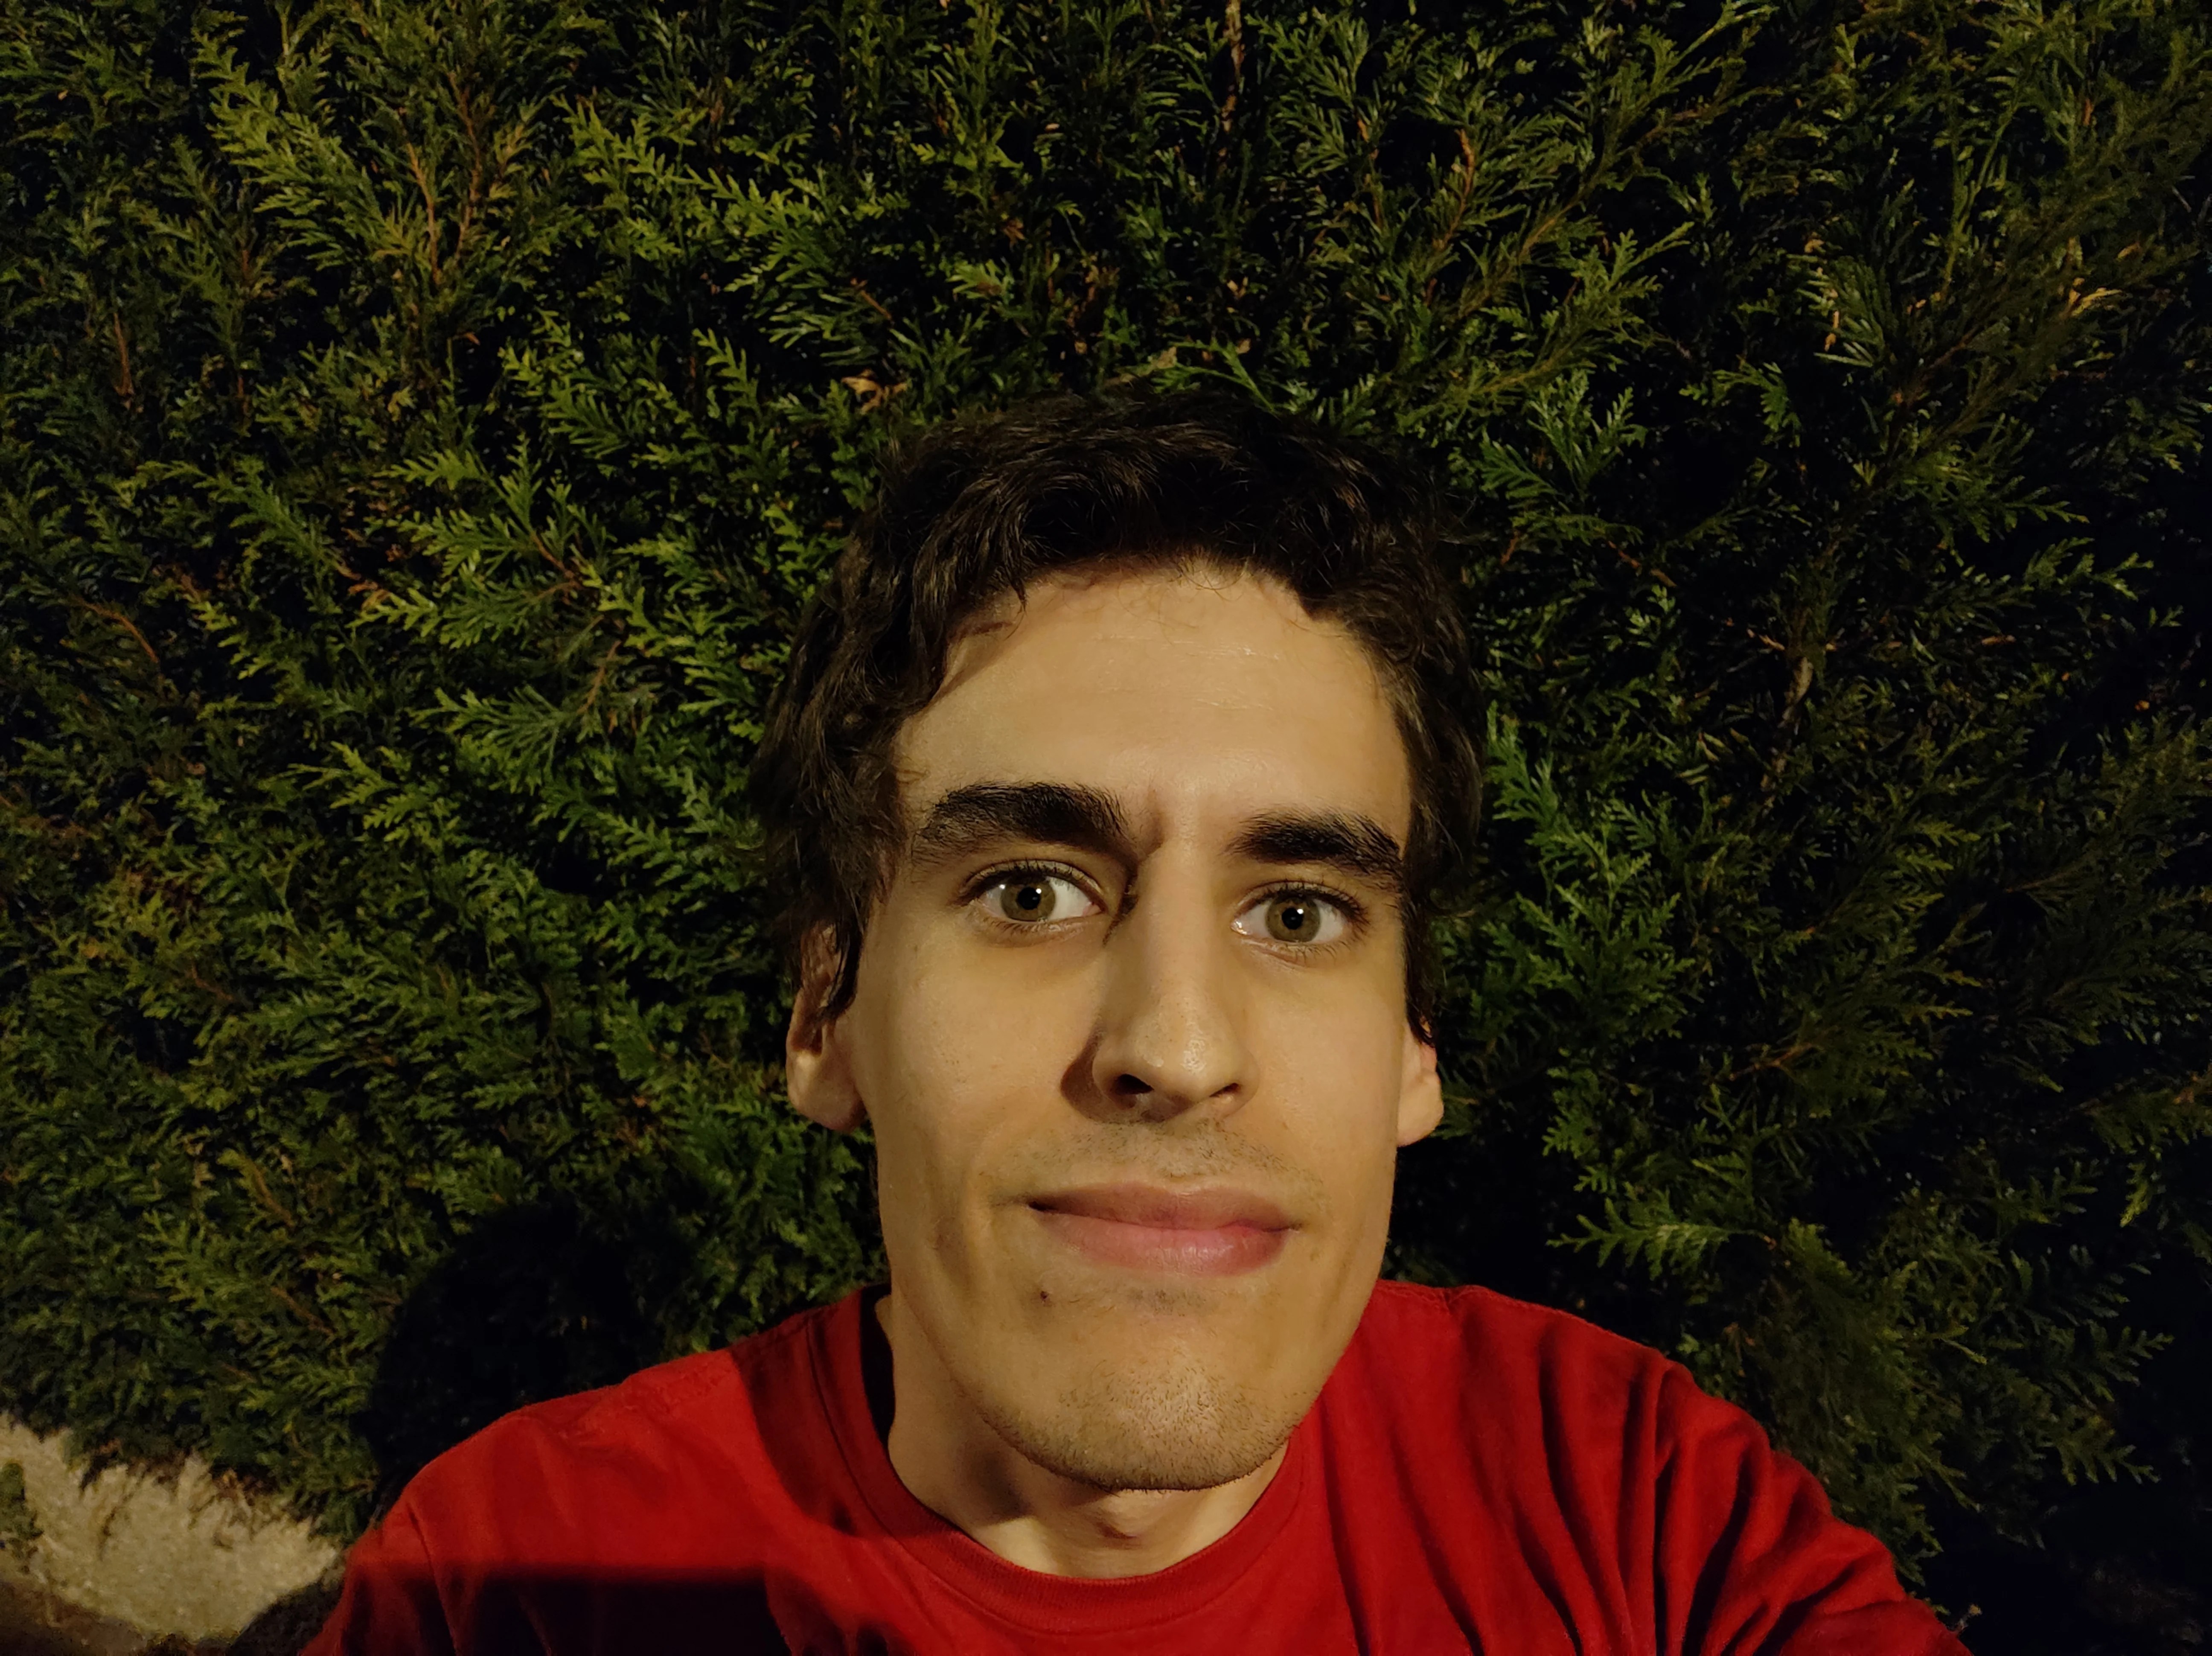 Xiaomi Pocophone F1 Photos exterieur nuit selfie